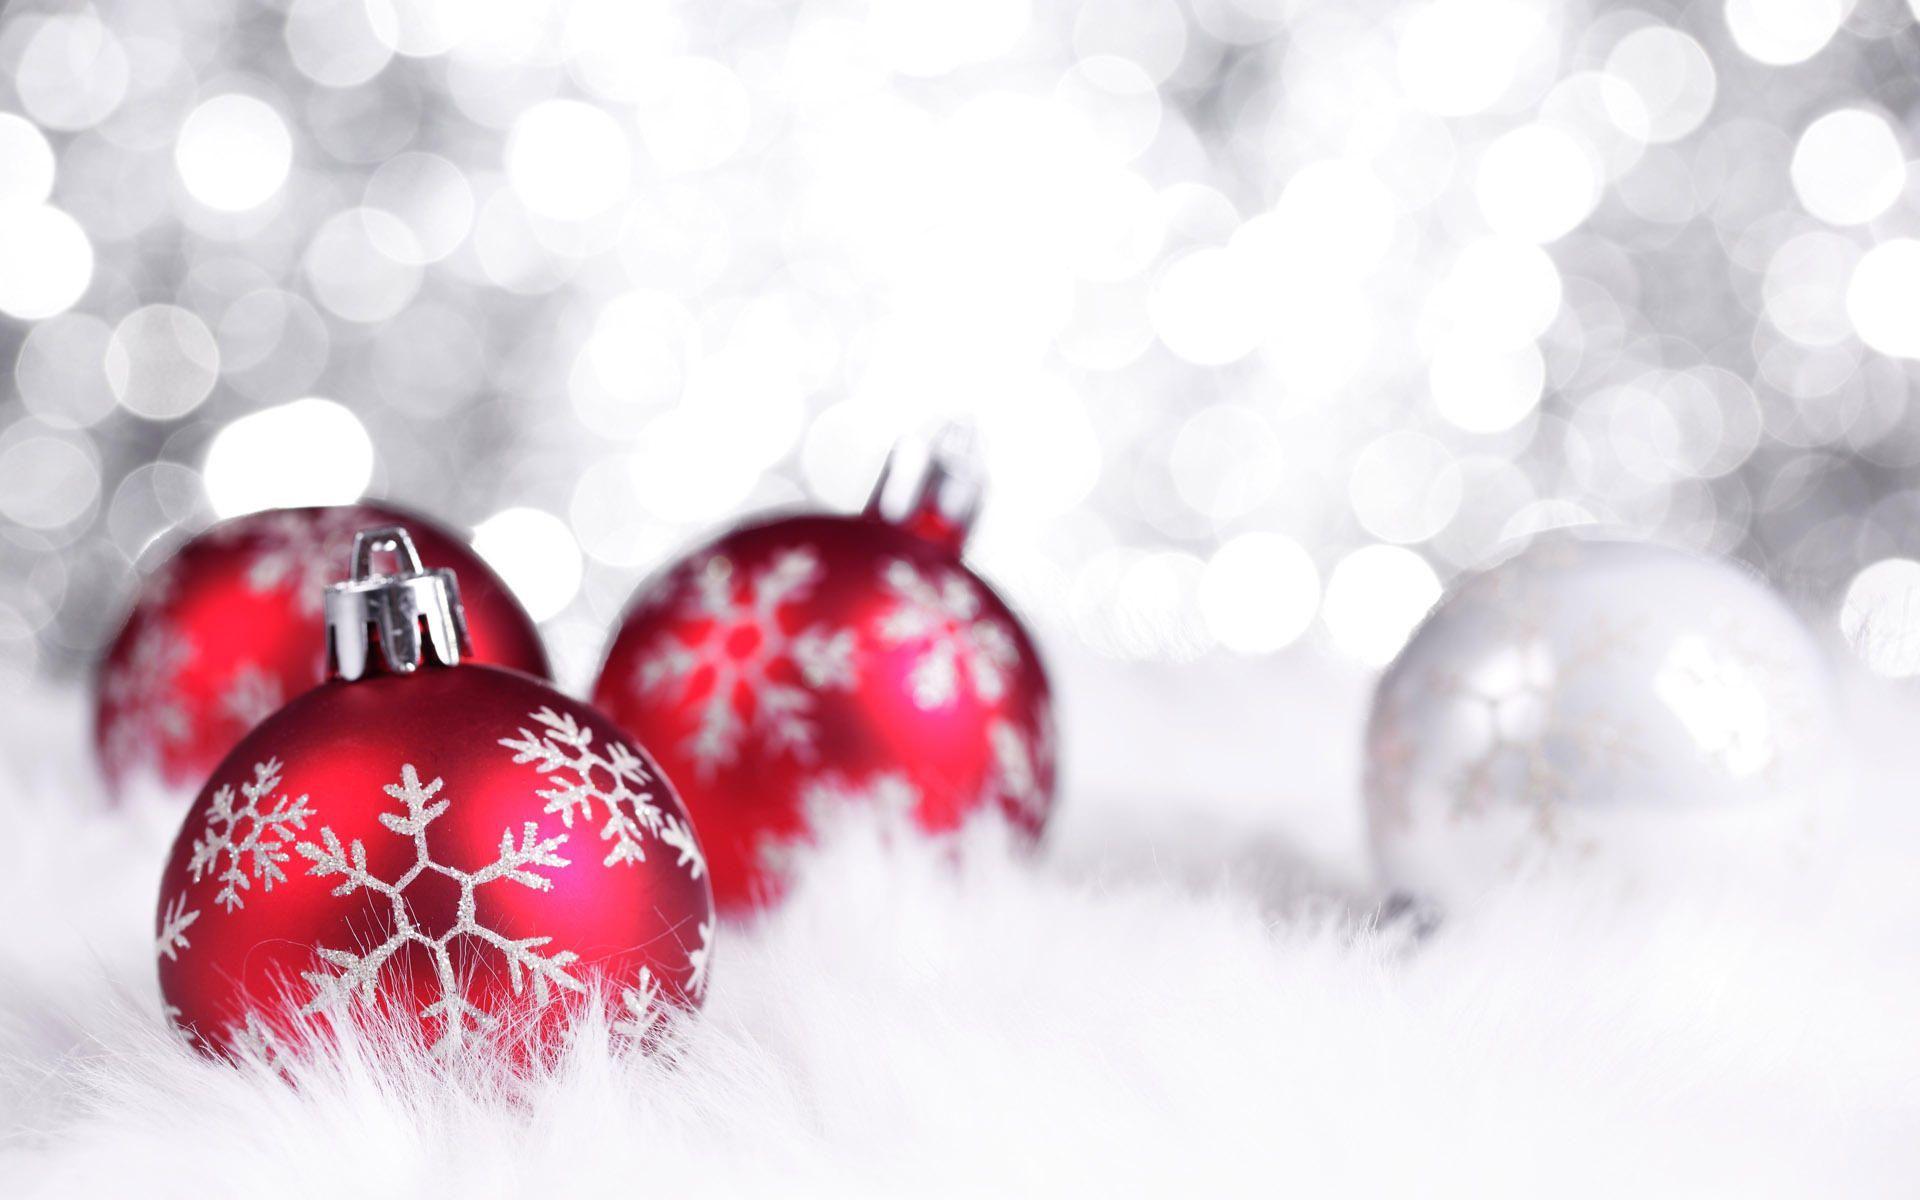 Hình nền Giáng Sinh màu trắng sẽ đưa bạn đi vào một thế giới tràn ngập tuyết rơi và cảm giác ngọt ngào của không khí Giáng Sinh. Hãy trang hoàng cho màn hình điện thoại của bạn với những hình ảnh Giáng Sinh màu trắng độc đáo và lãng mạn đến mê hồn!